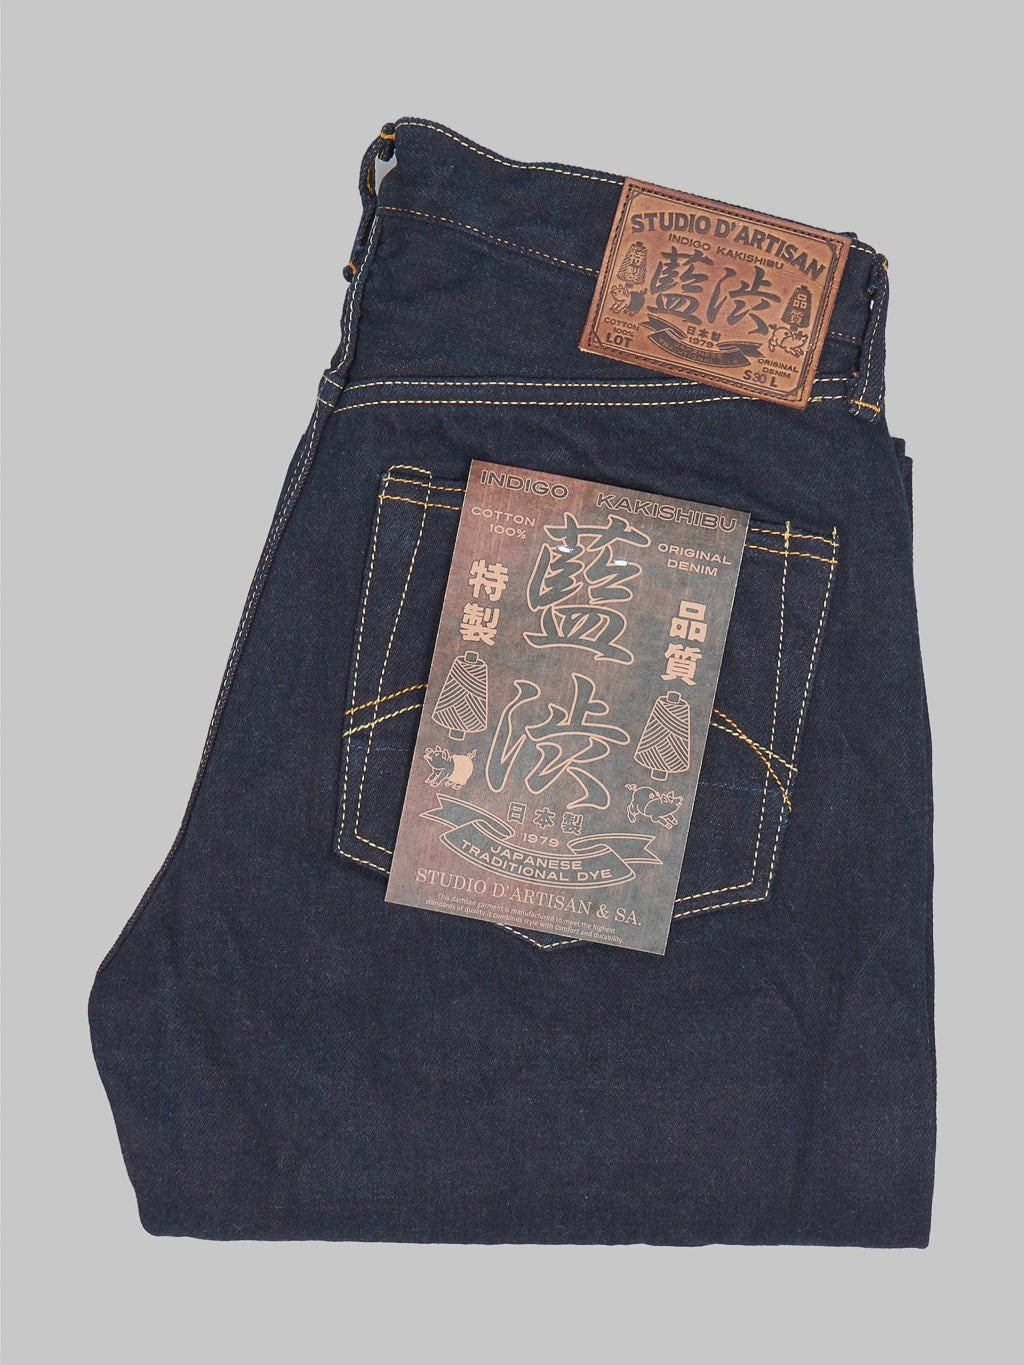 Studio Dartisan D1879 15oz Aishibuzome Natural Indigo x Kakishibu Regular Straight Jeans